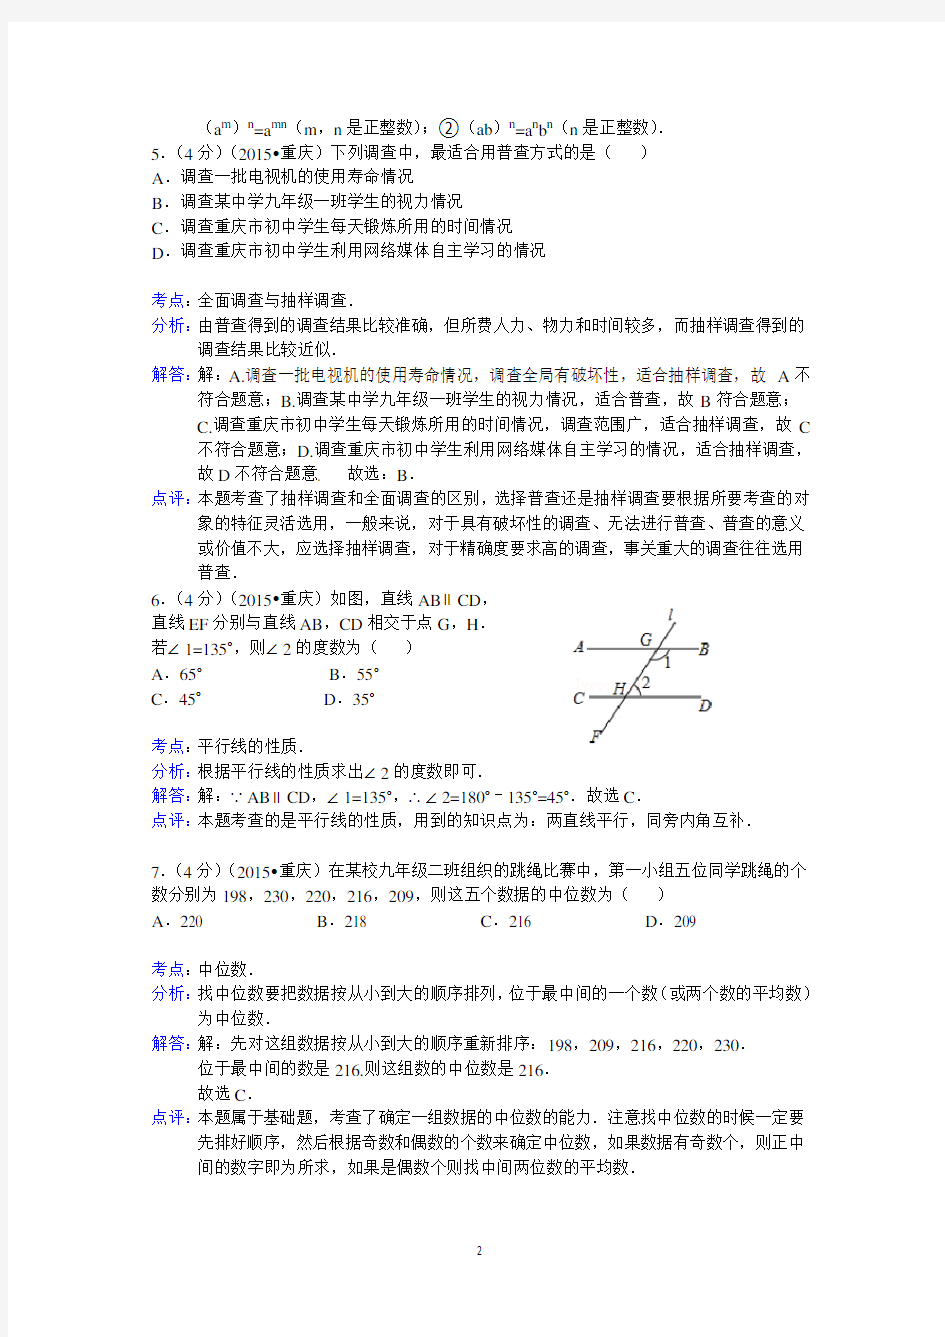 2015年重庆市中考数学试卷(A卷)答案与解析